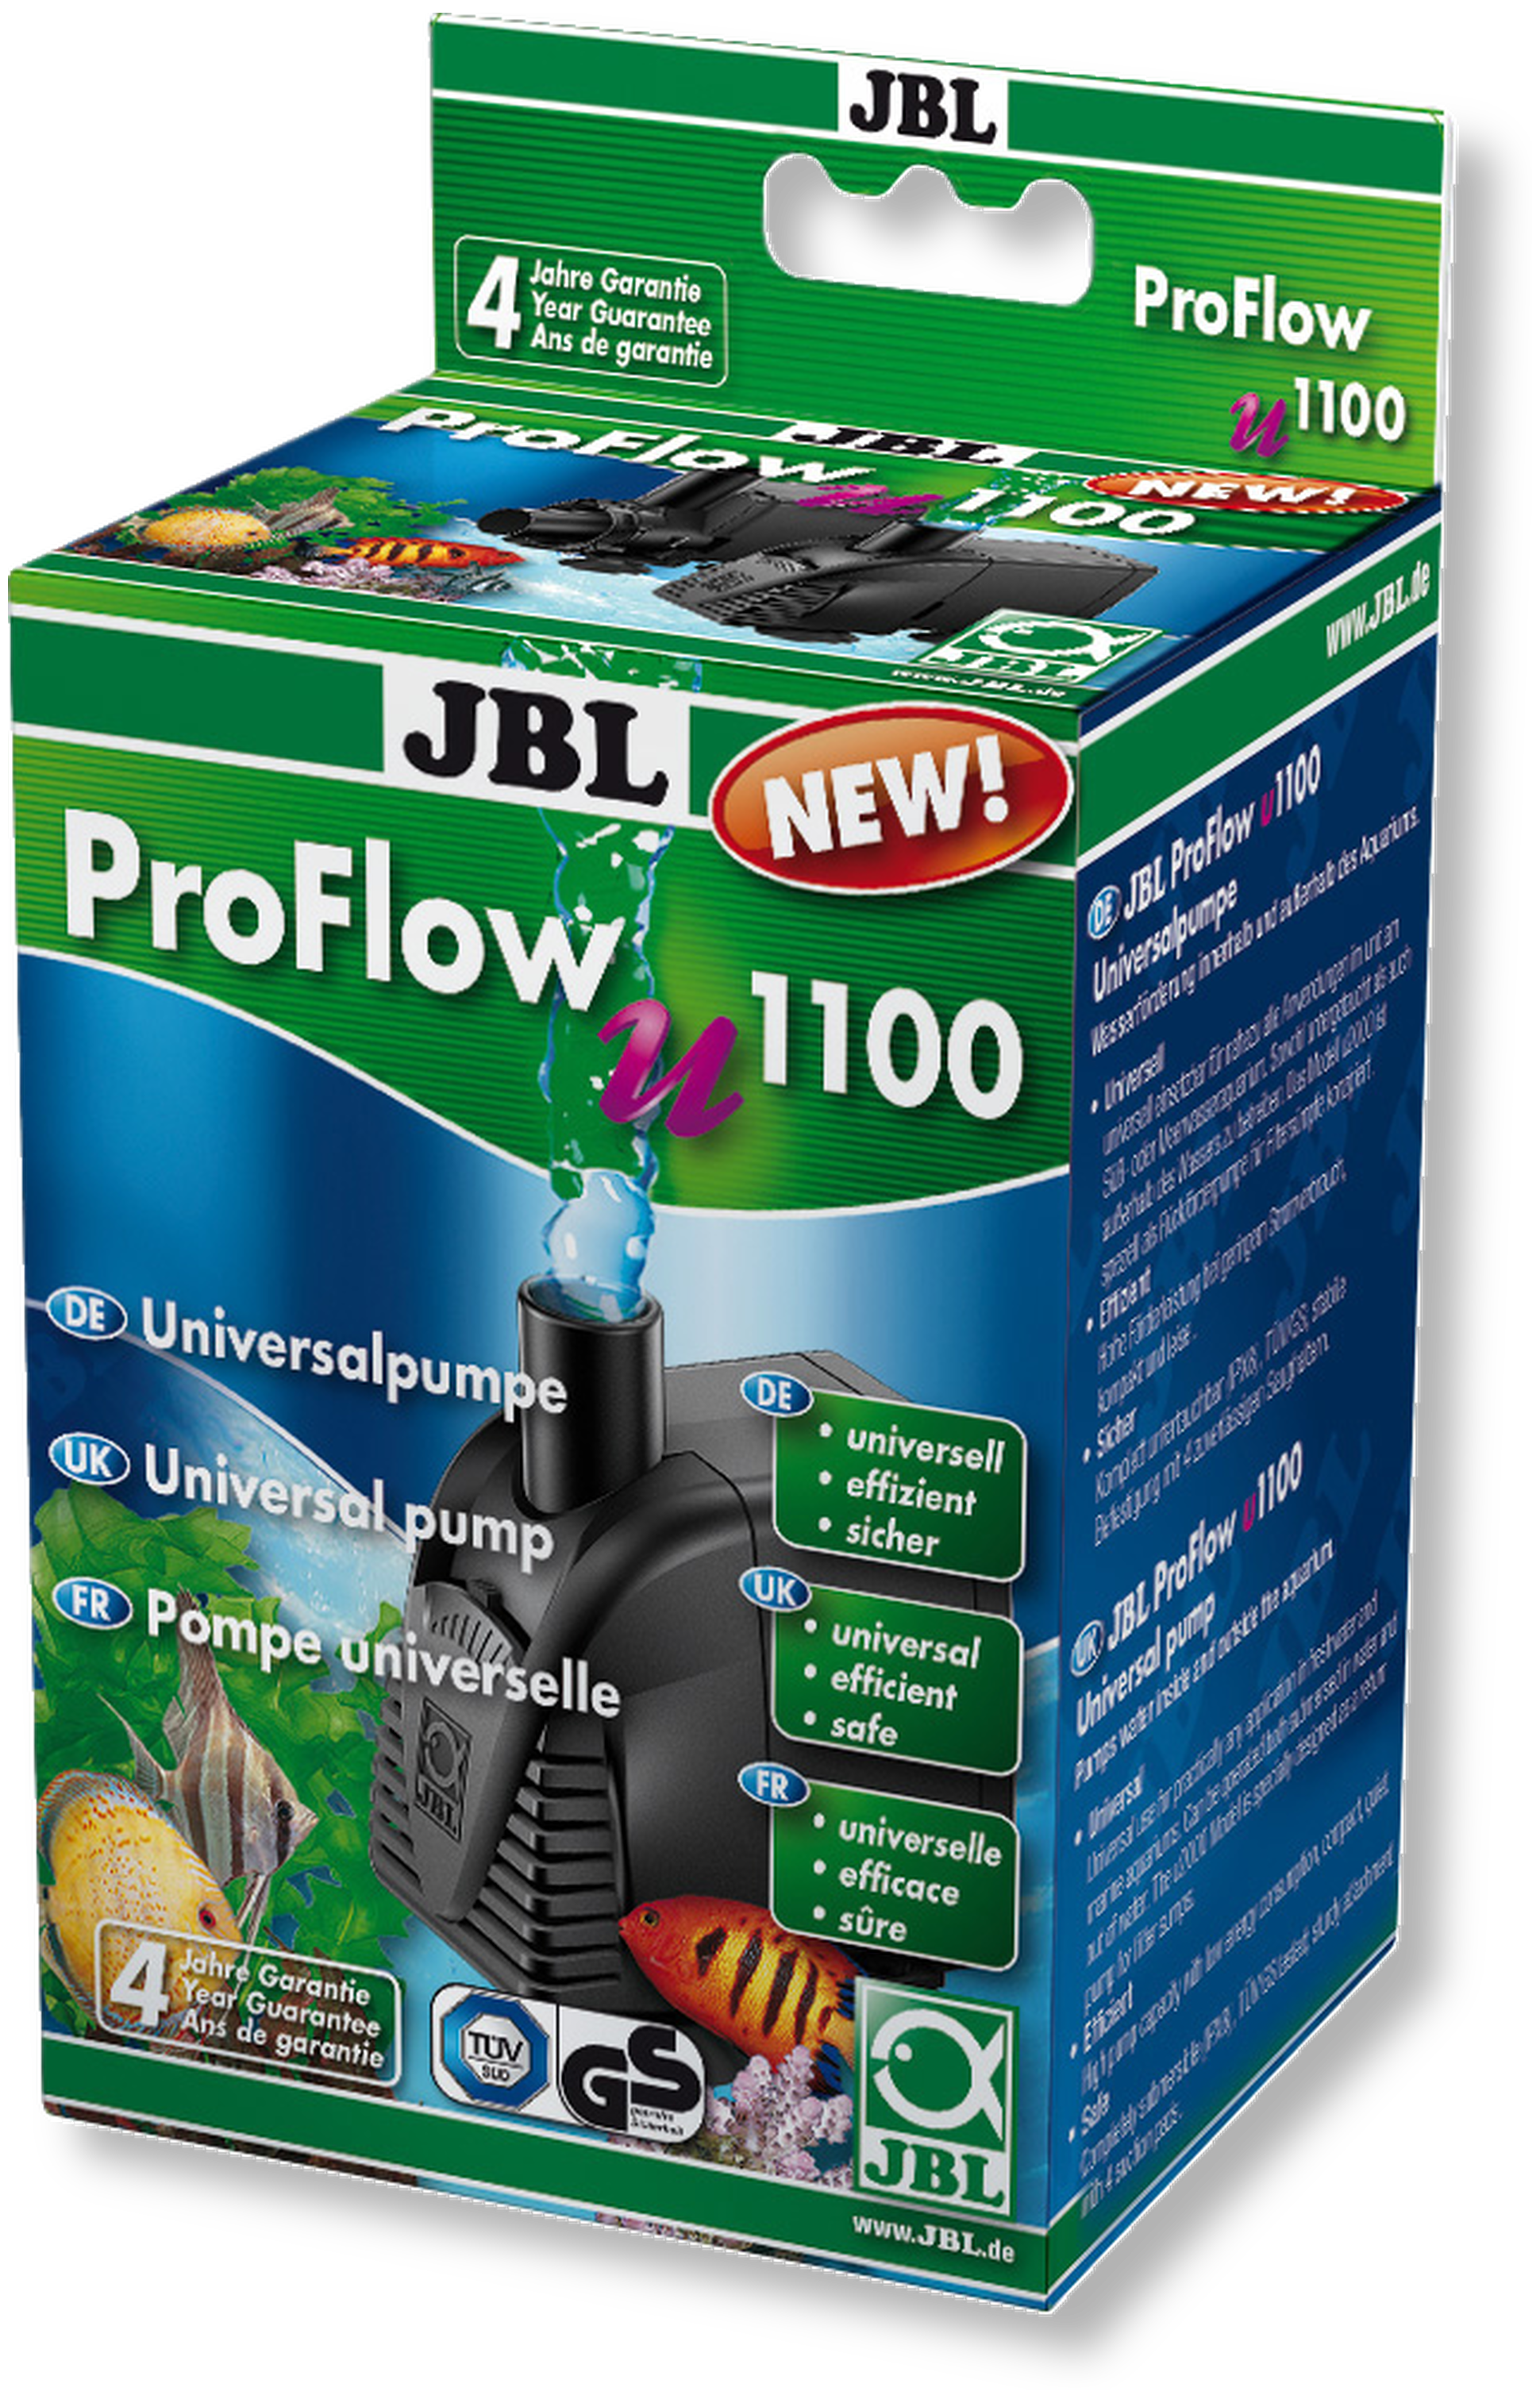 JBL ProFlow Pumpe u1100